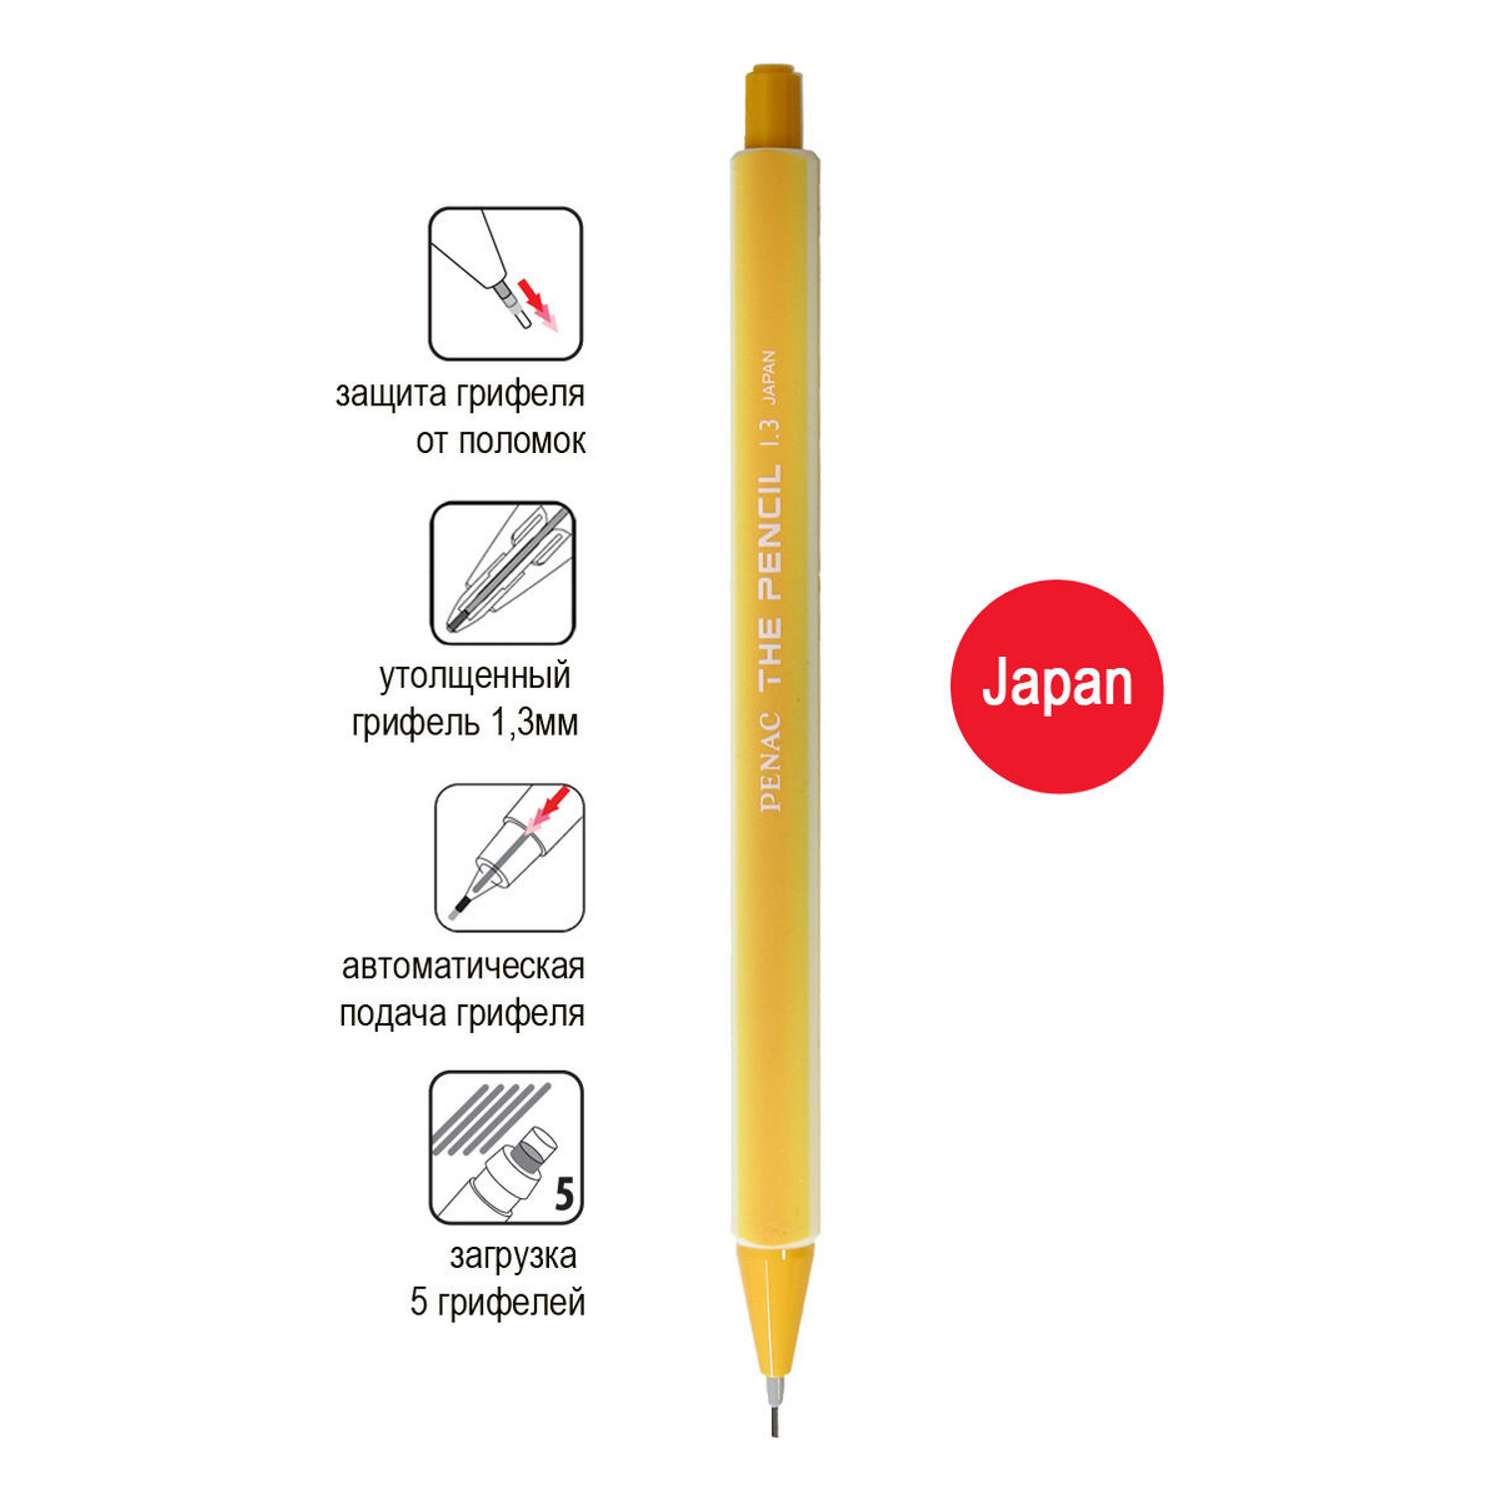 Карандаш механический PENAC The Pencil 1.3мм желтый SA2003-13 - фото 2